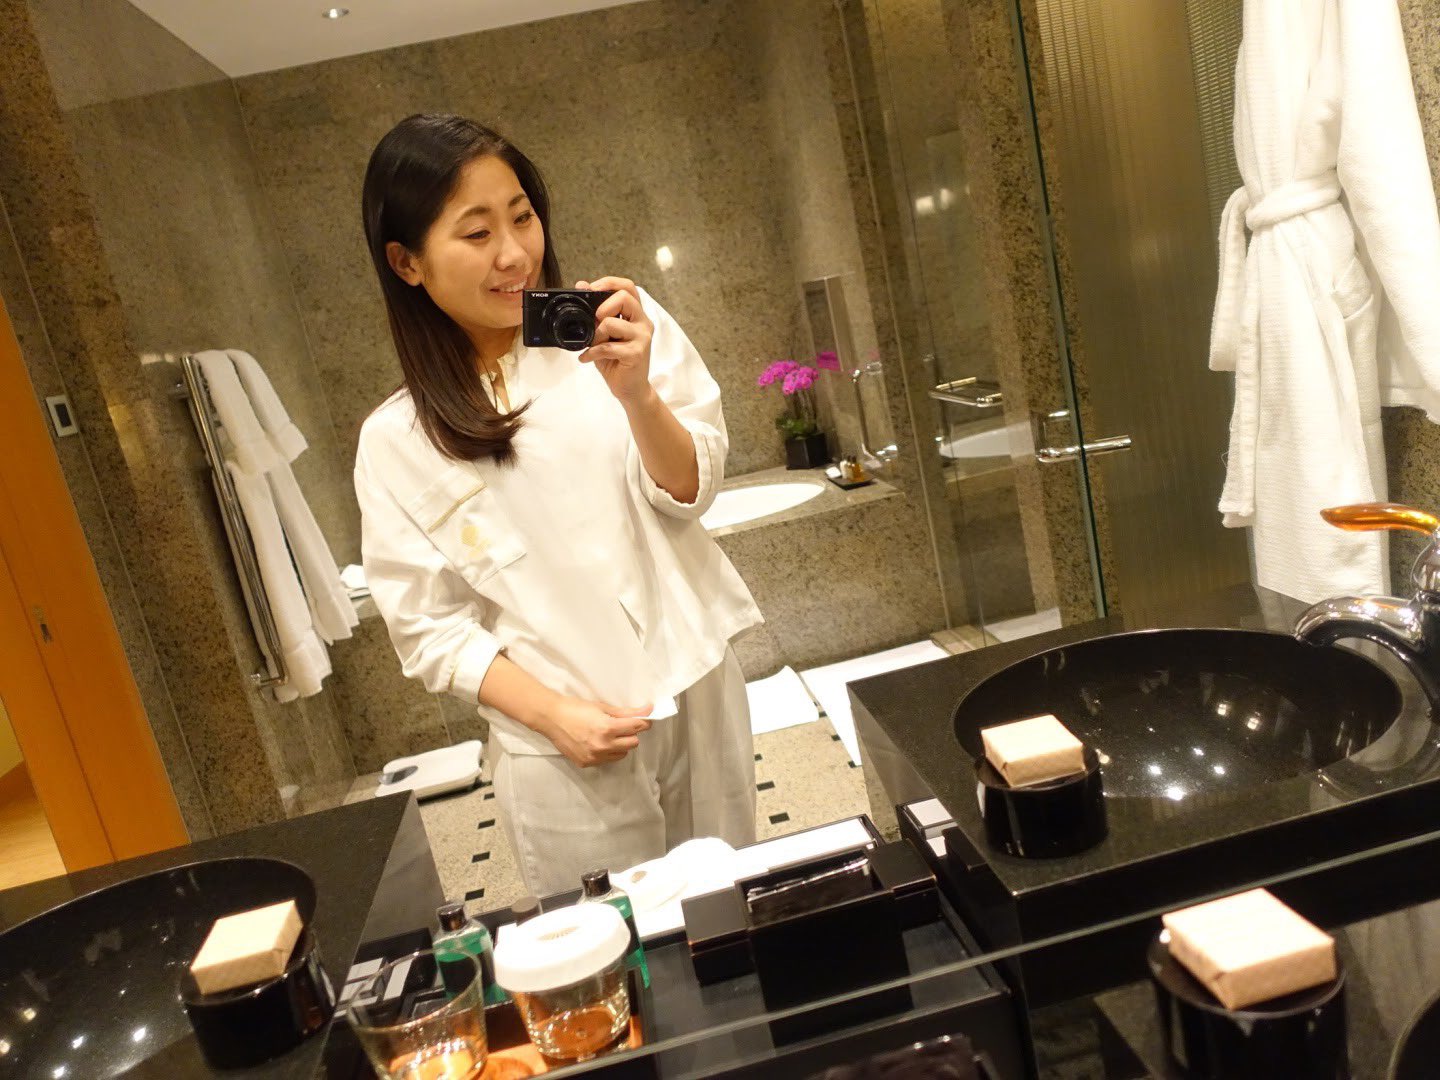 服部恭子@福岡 on Twitter: "ホテルによってパジャマの素材感もデザインも違うのですが #マンダリンオリエンタル東京 の